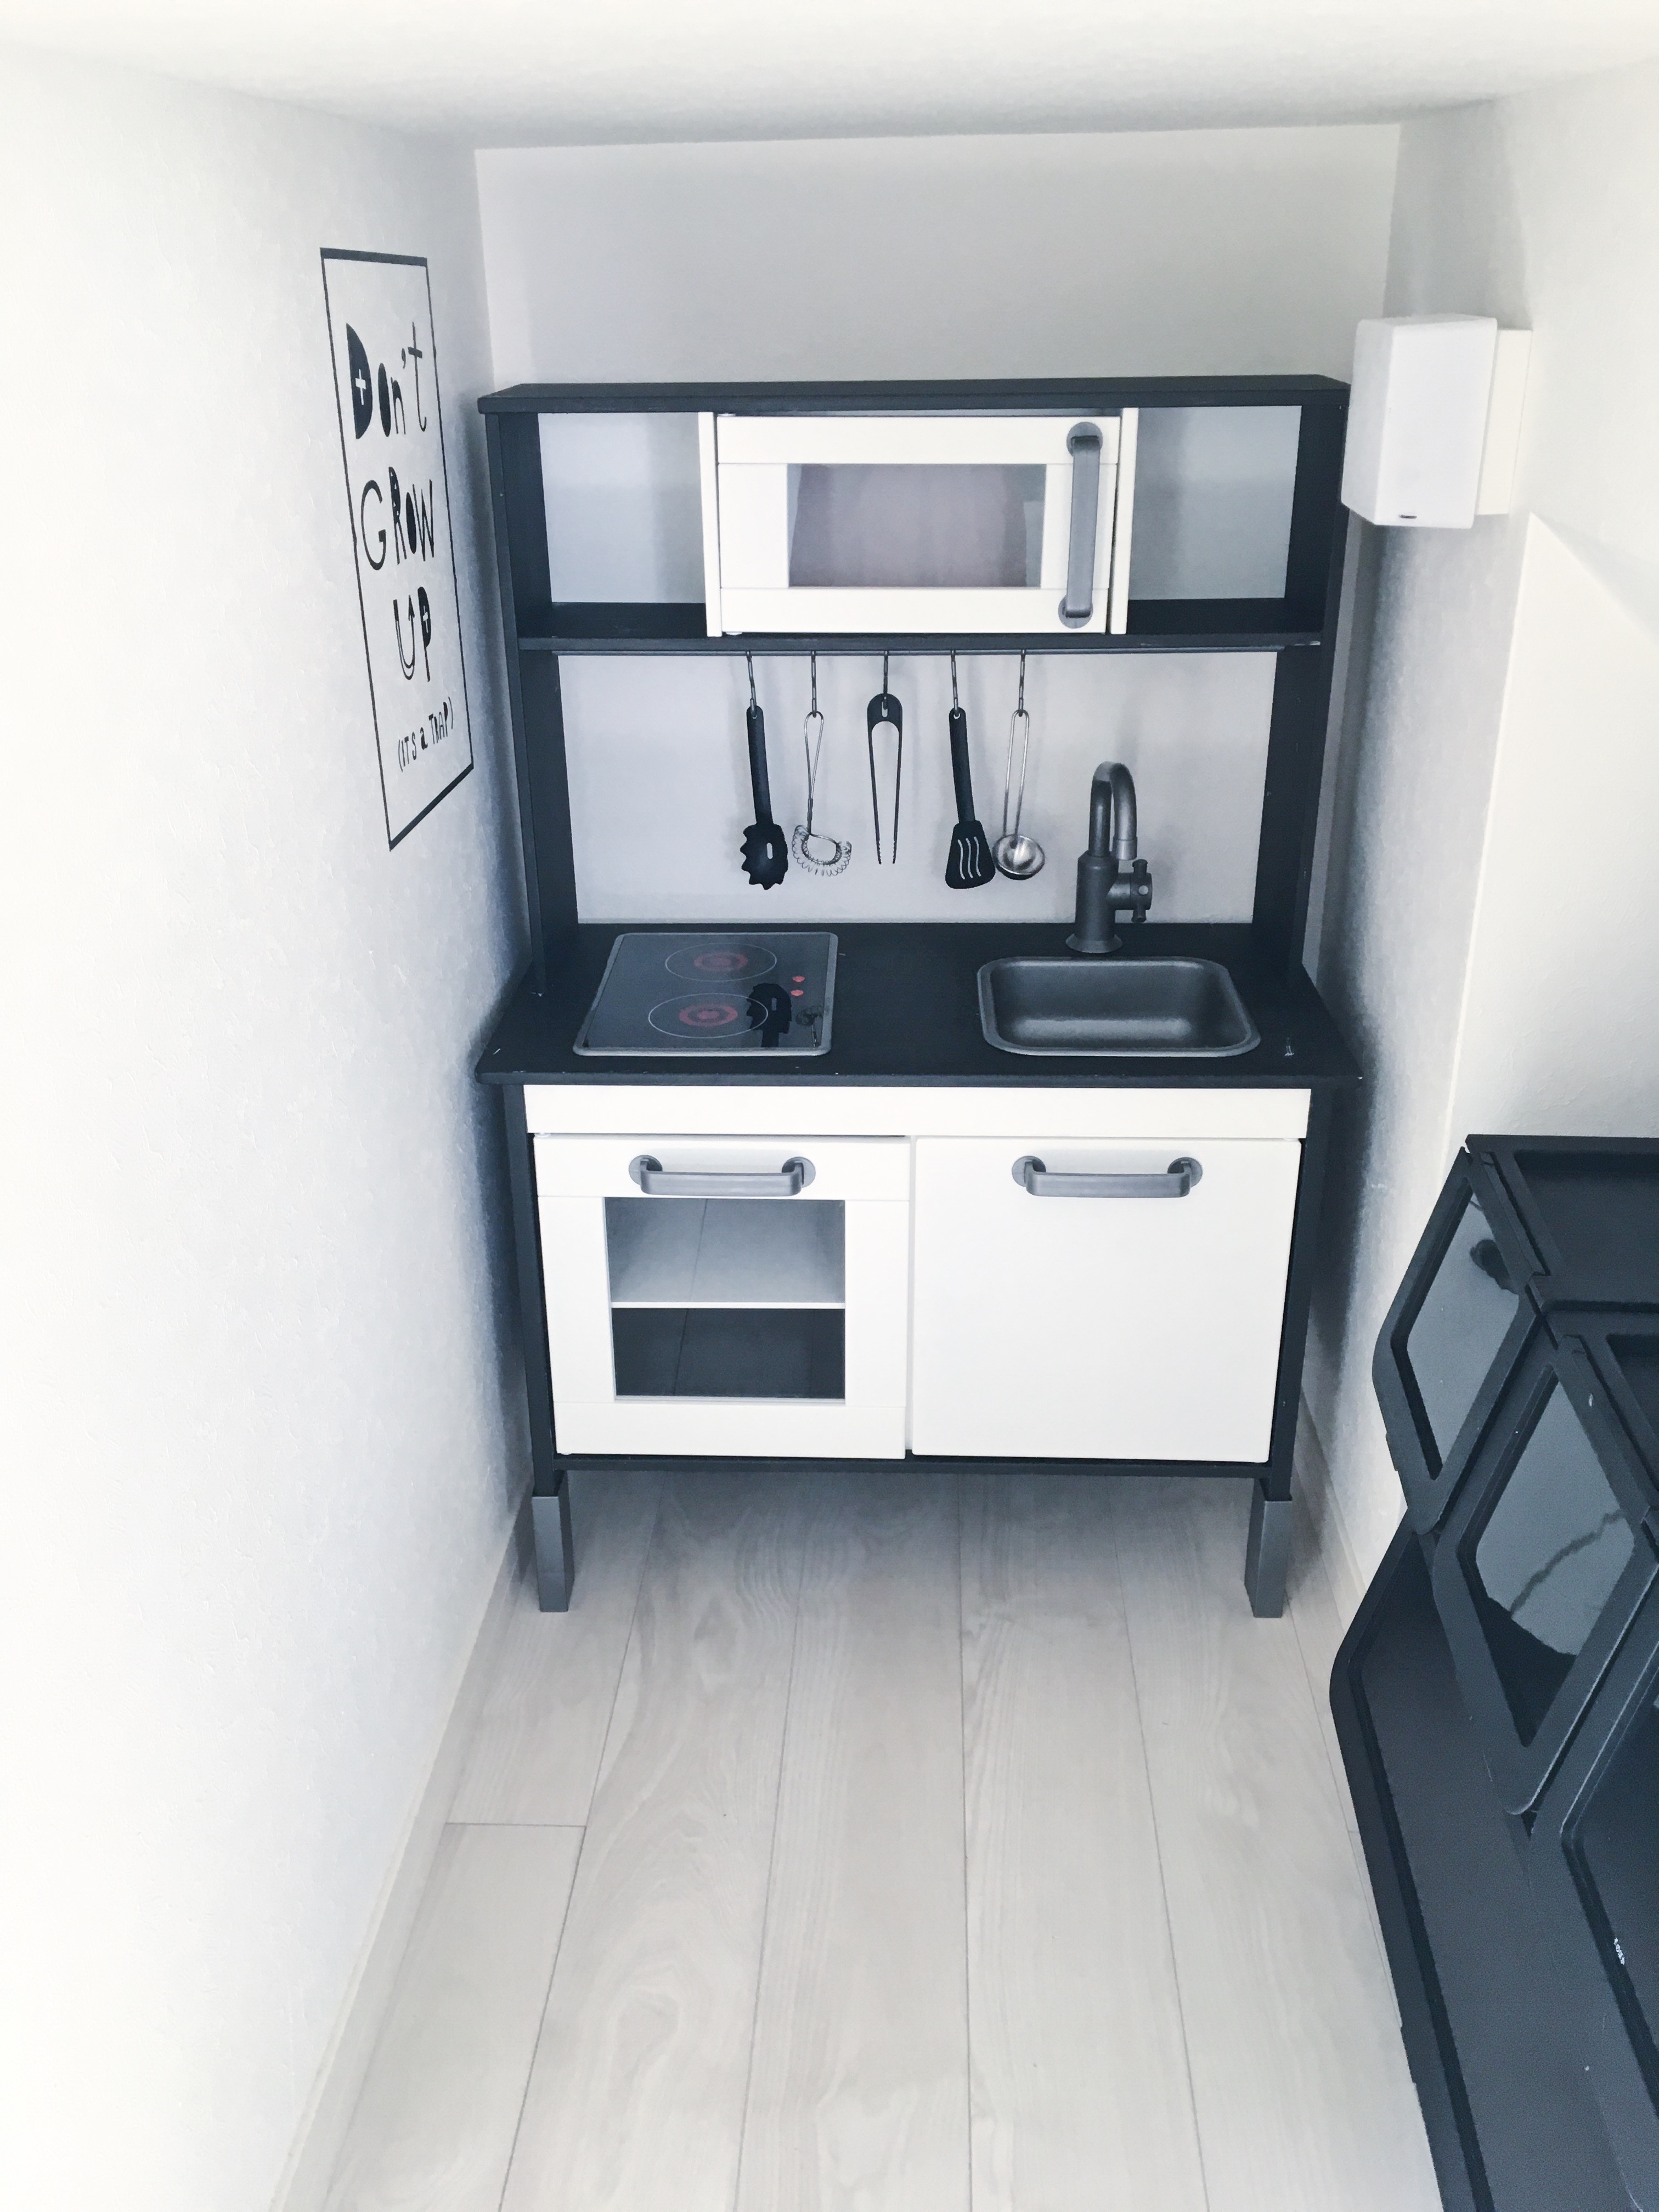 Ikeaのおままごとキッチンをアレンジ とおもちゃ収納部屋を刷新 Yururira S Interior Blog